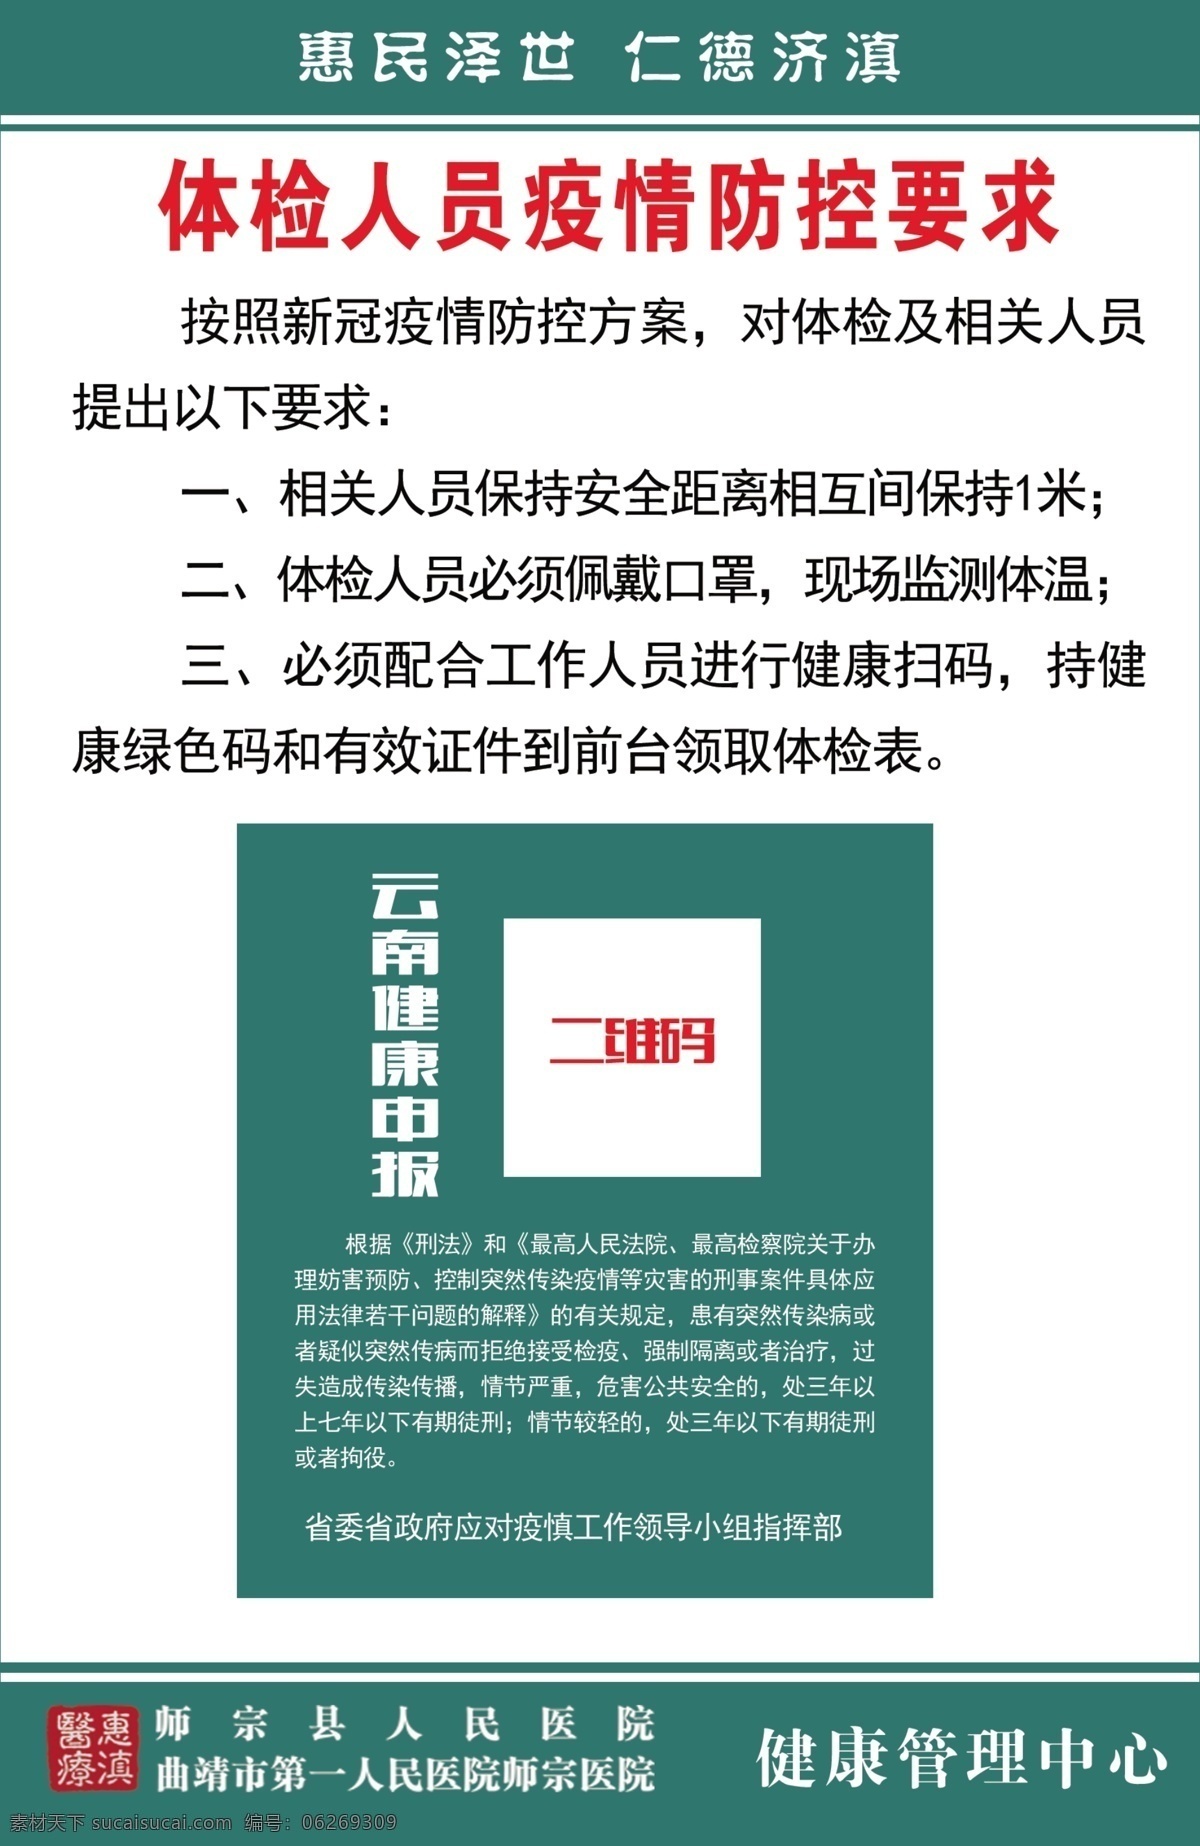 云南健康码 众志成城 云南 健康码 原图 医院健康码 素材logo